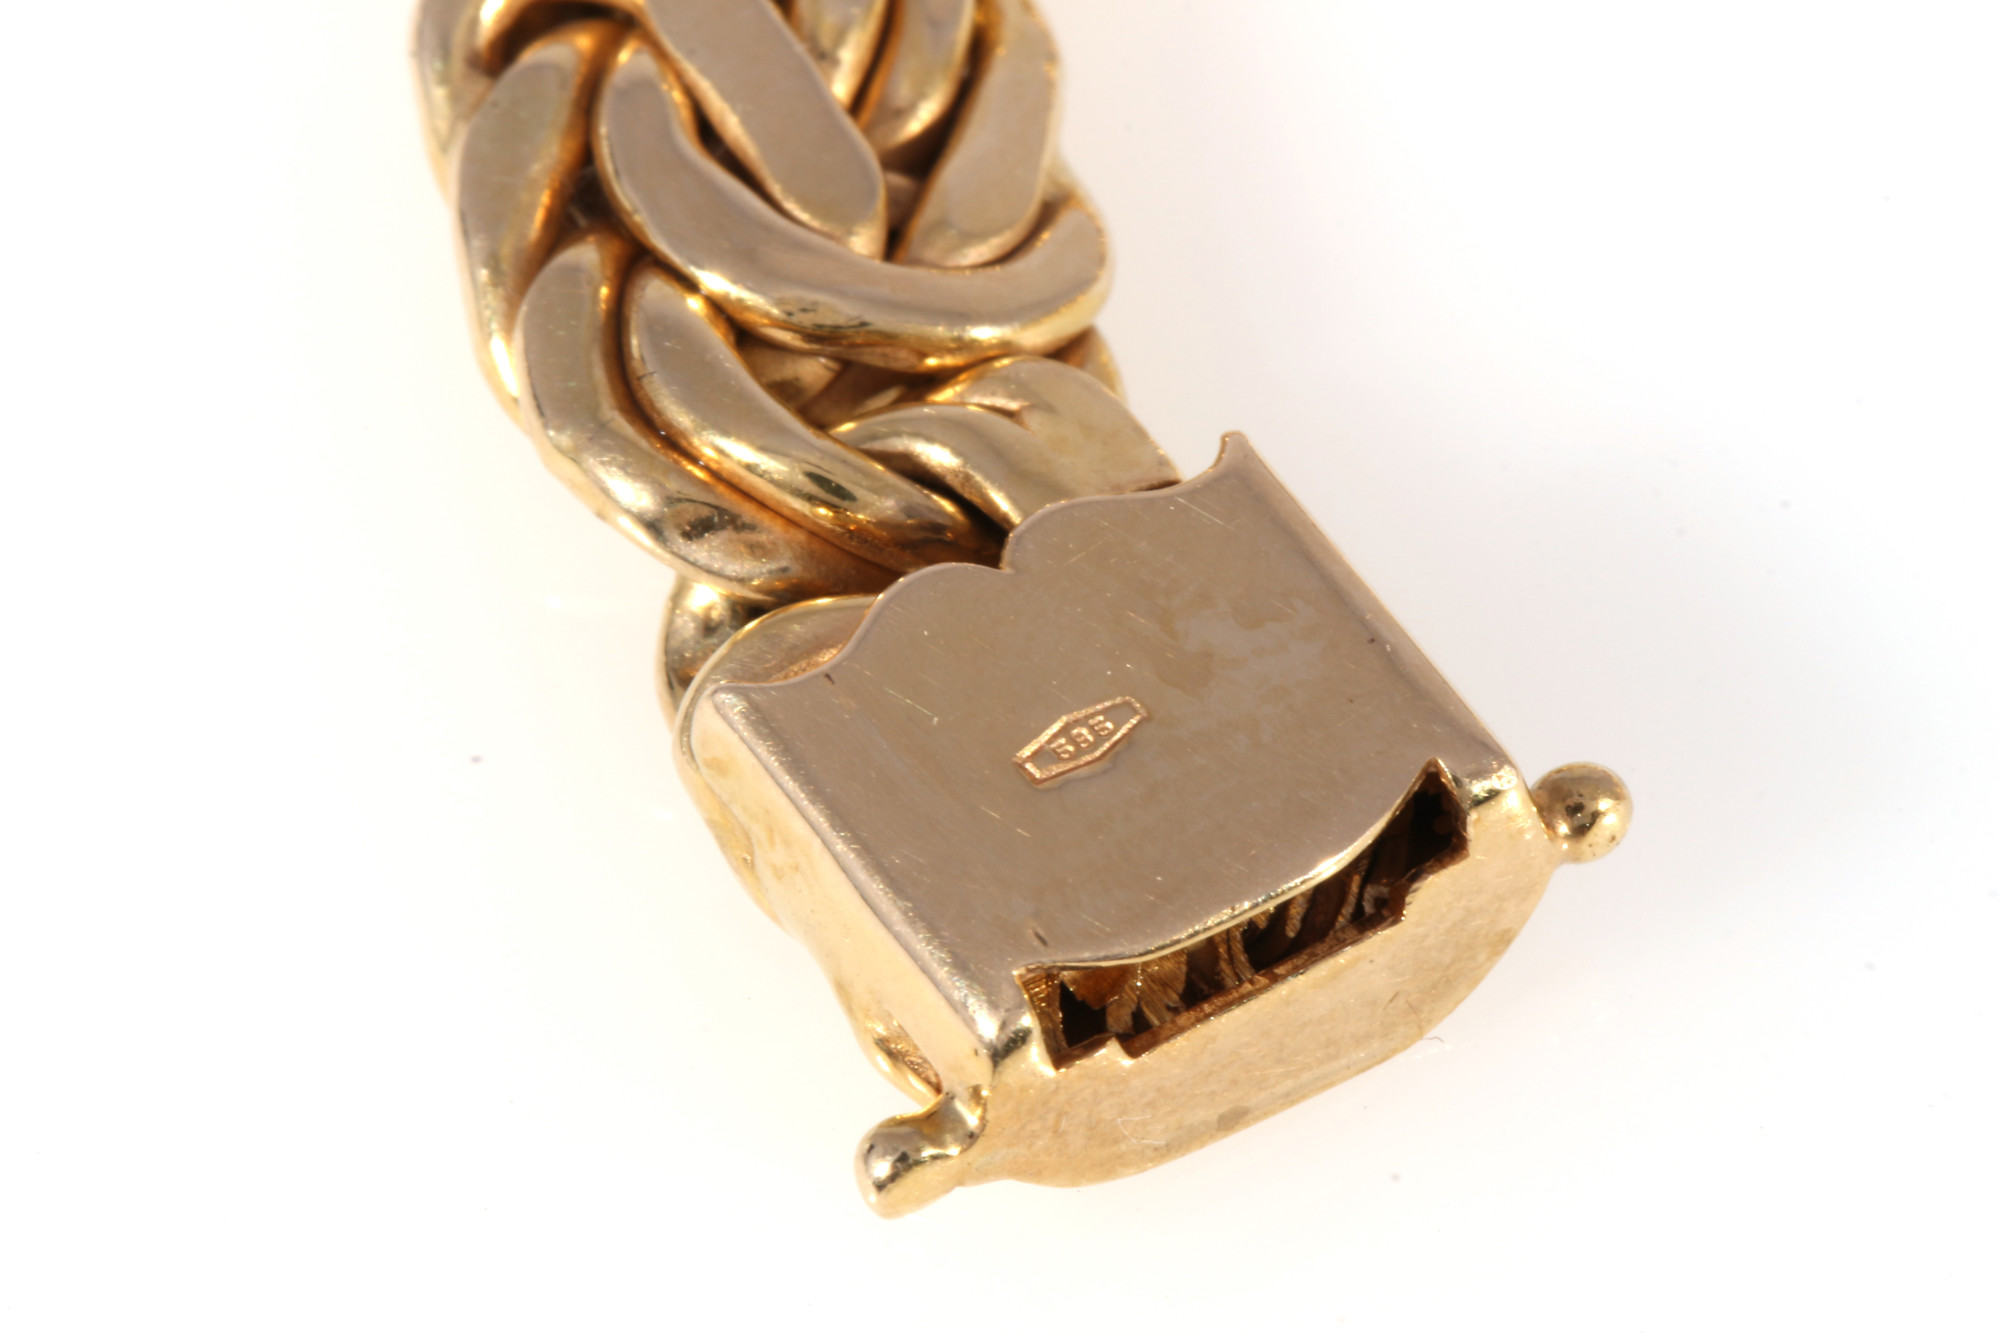 750 gold solid king bracelet, 18K Gold massives Königsarmband, - Image 5 of 5